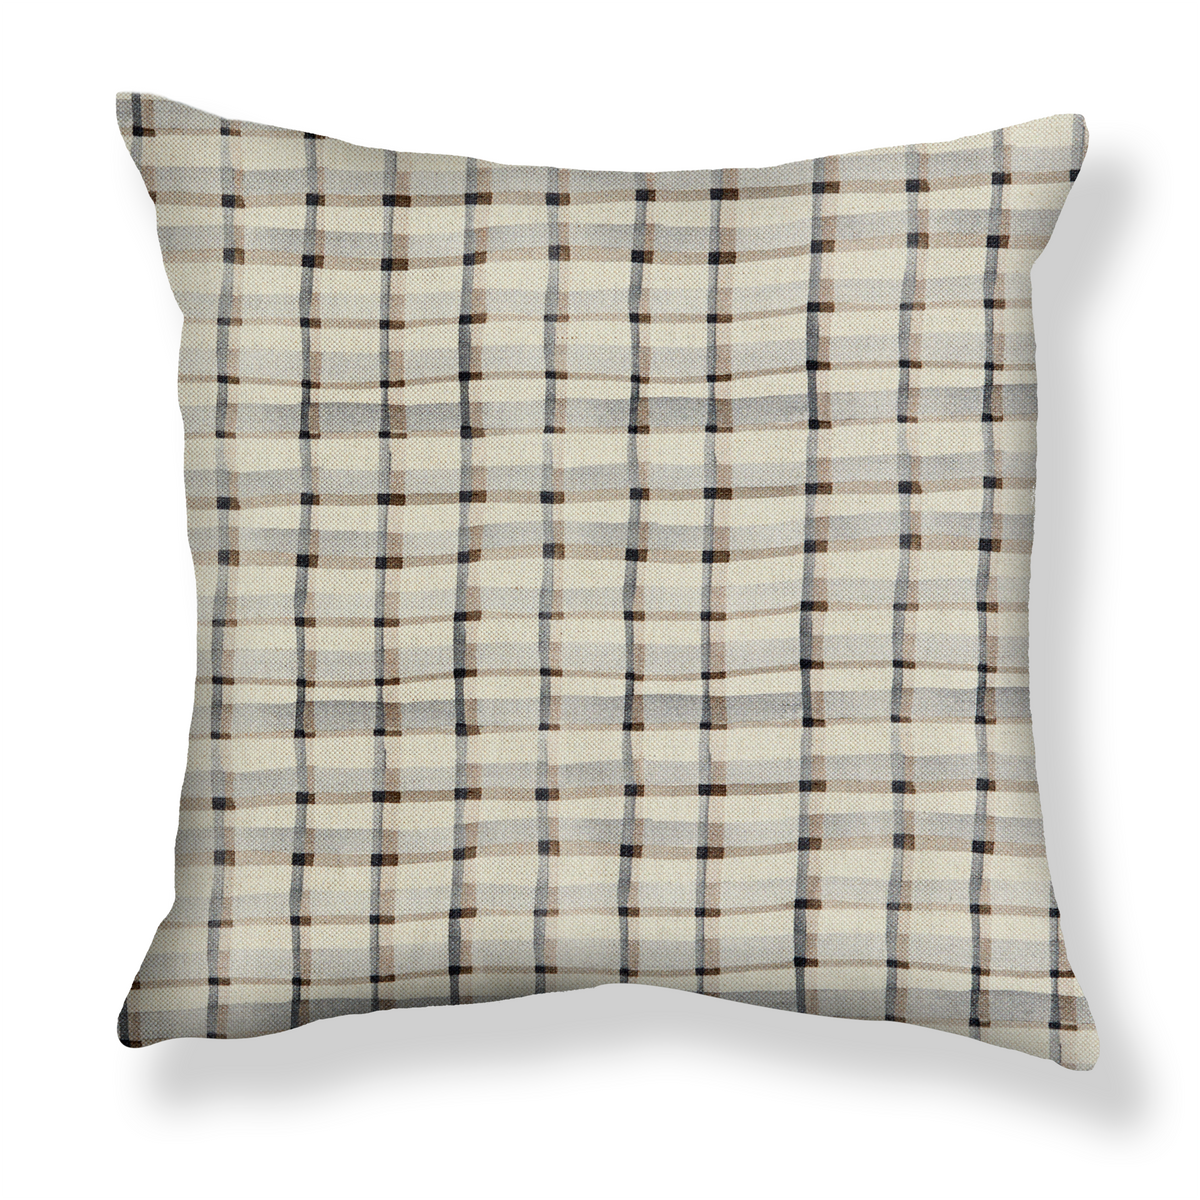 Mason Plaid Pillow in Natural/Gray